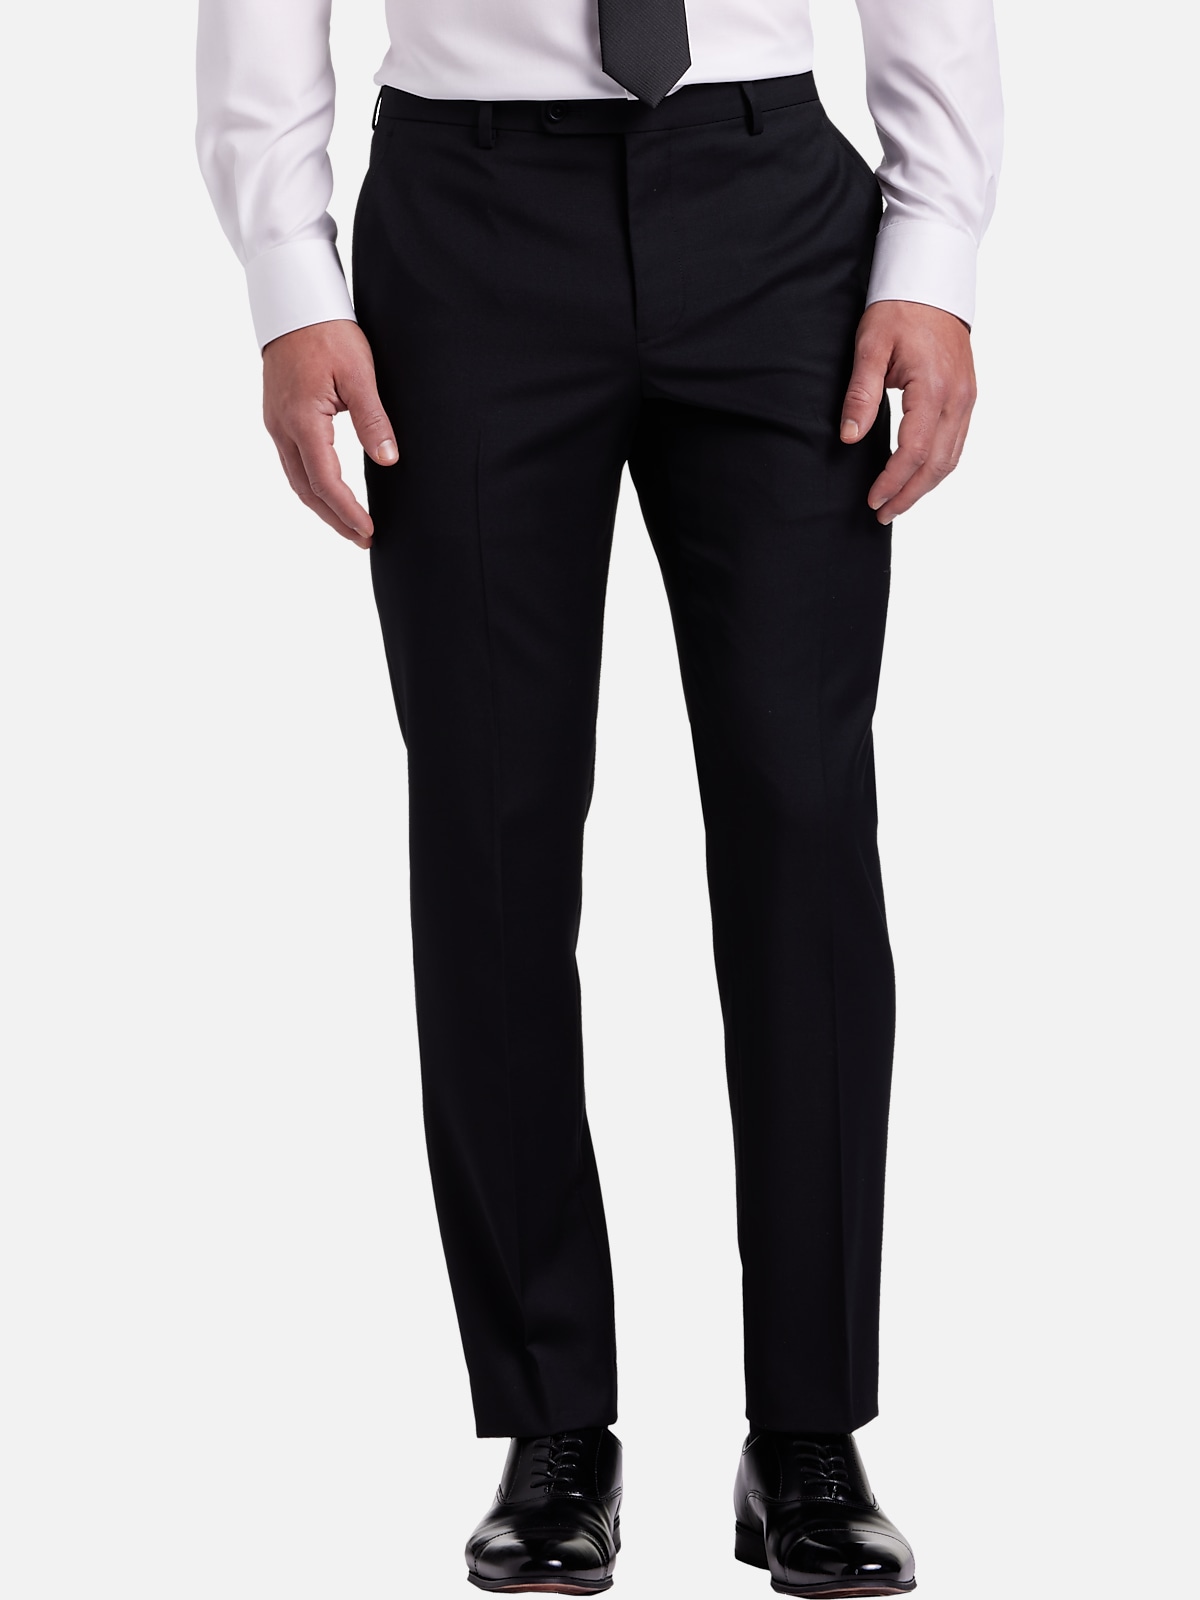 JOE Joseph Abboud Slim Fit Suit Separates Pants | New Arrivals| Men's ...